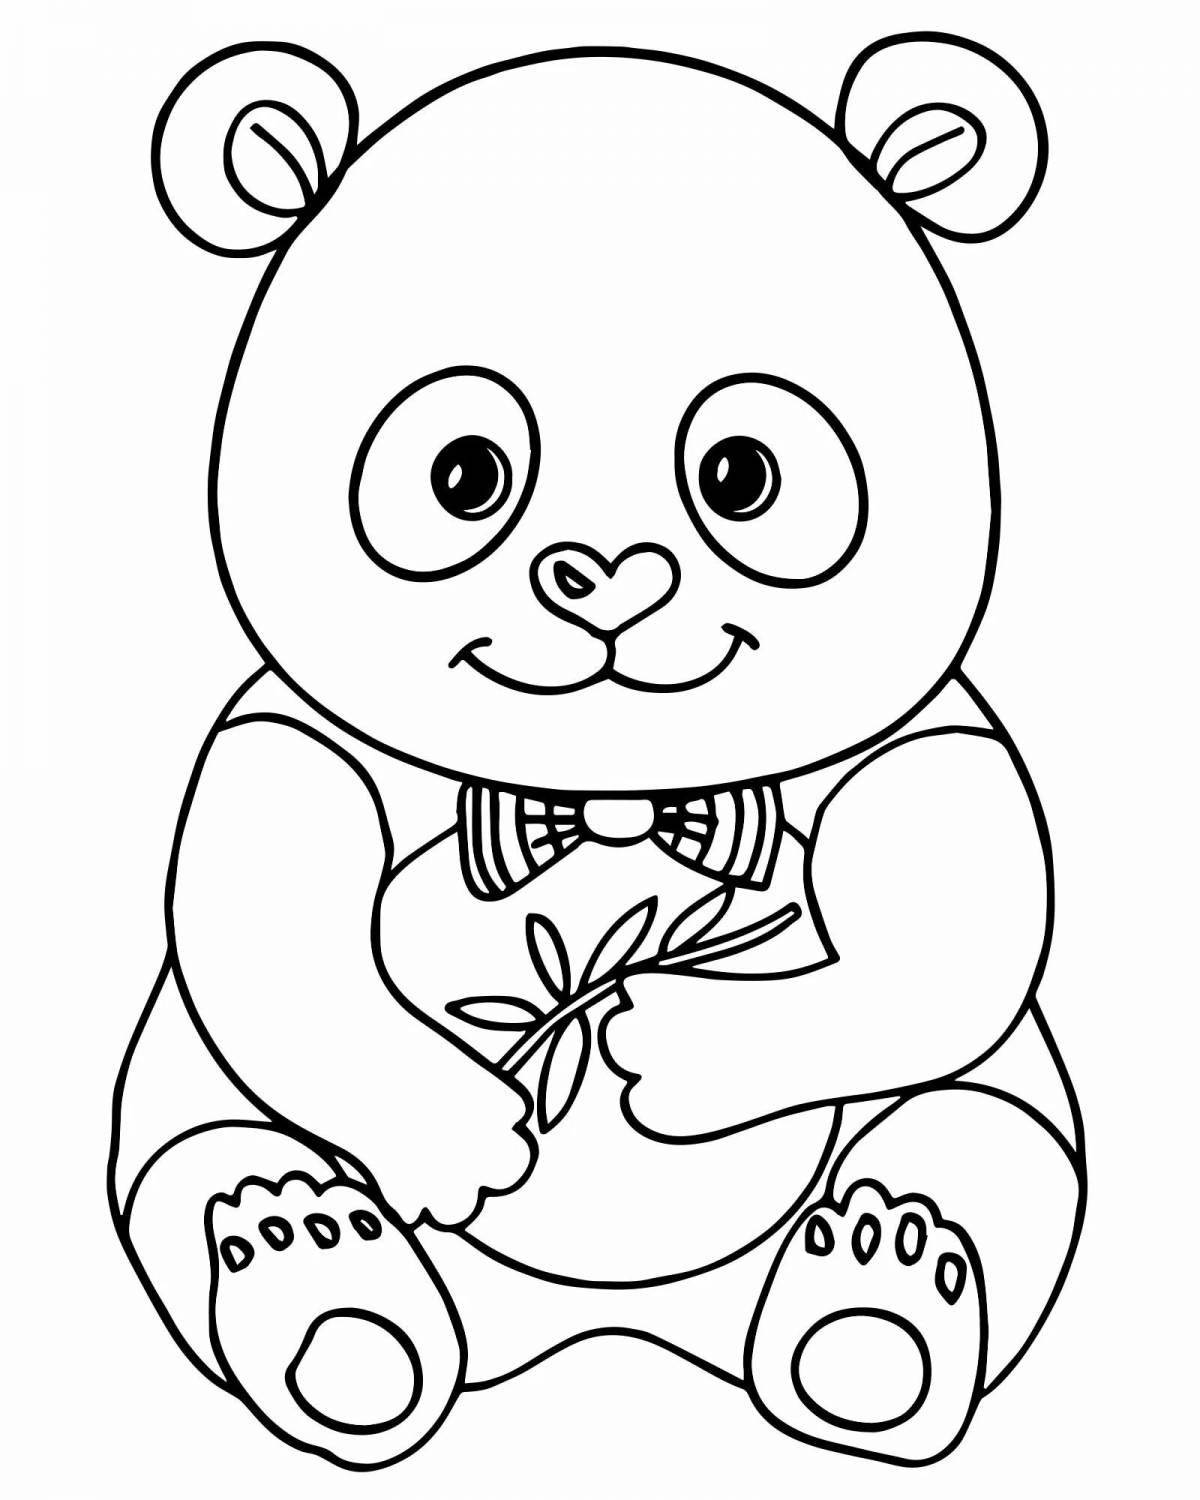 Colorful panda coloring book for kids